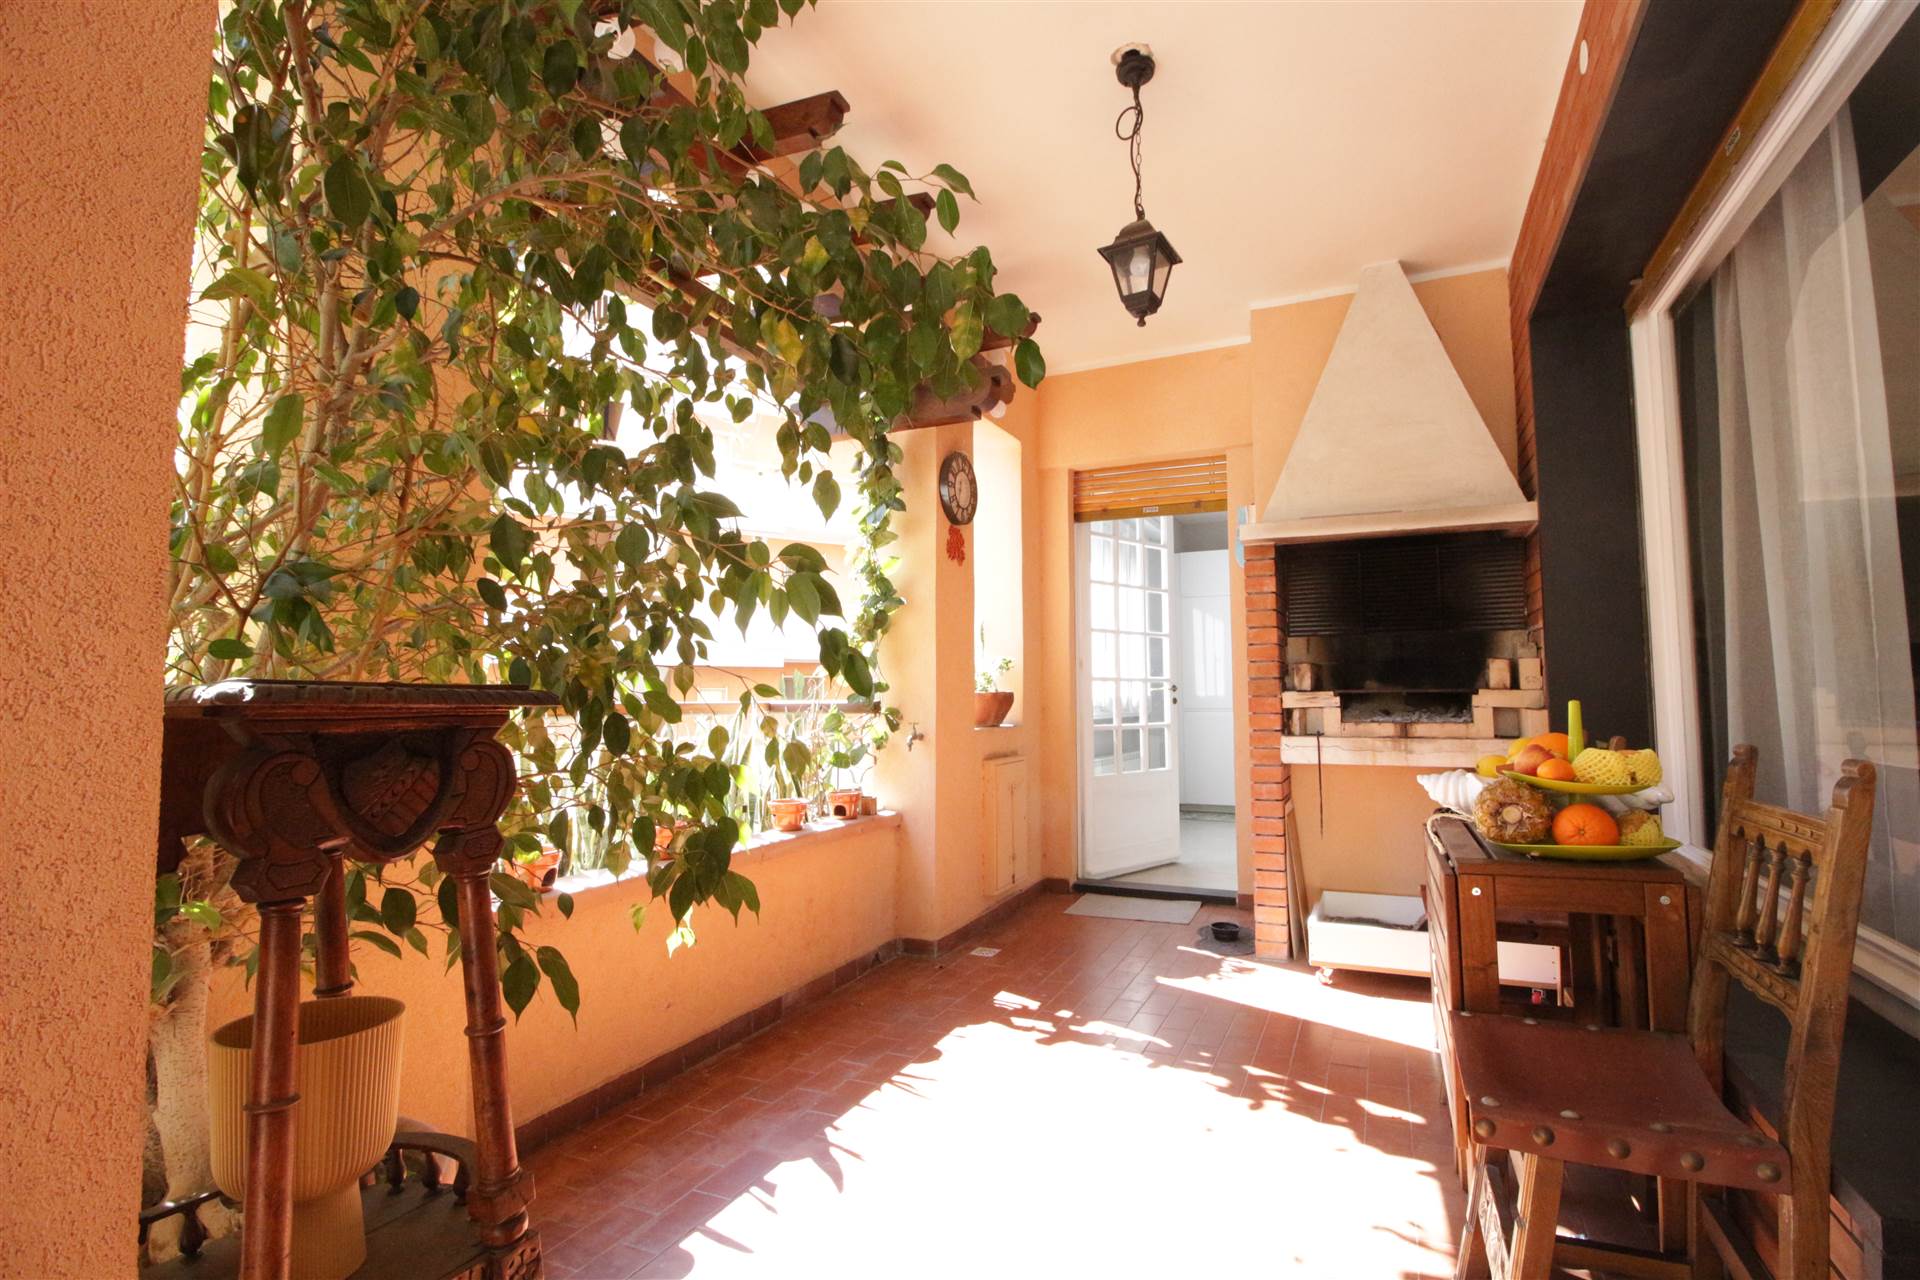 Splendido appartamento di prestigio in vendita a Ventimiglia, con una superficie di 160 mq situato al primo piano. La classe energetica è D e 